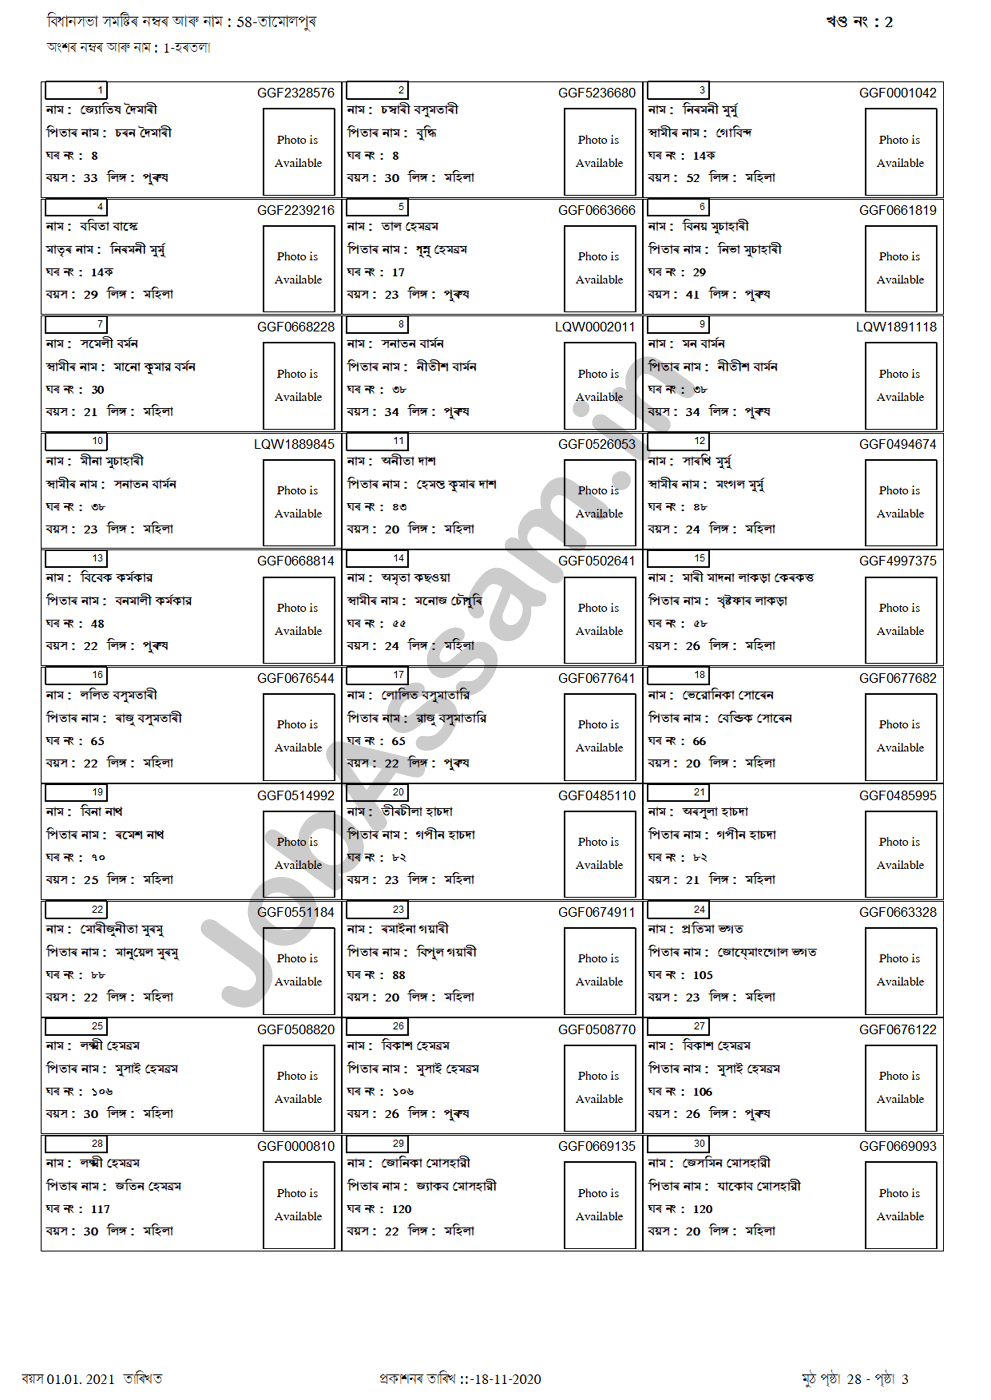 Sample Voter List of Assam